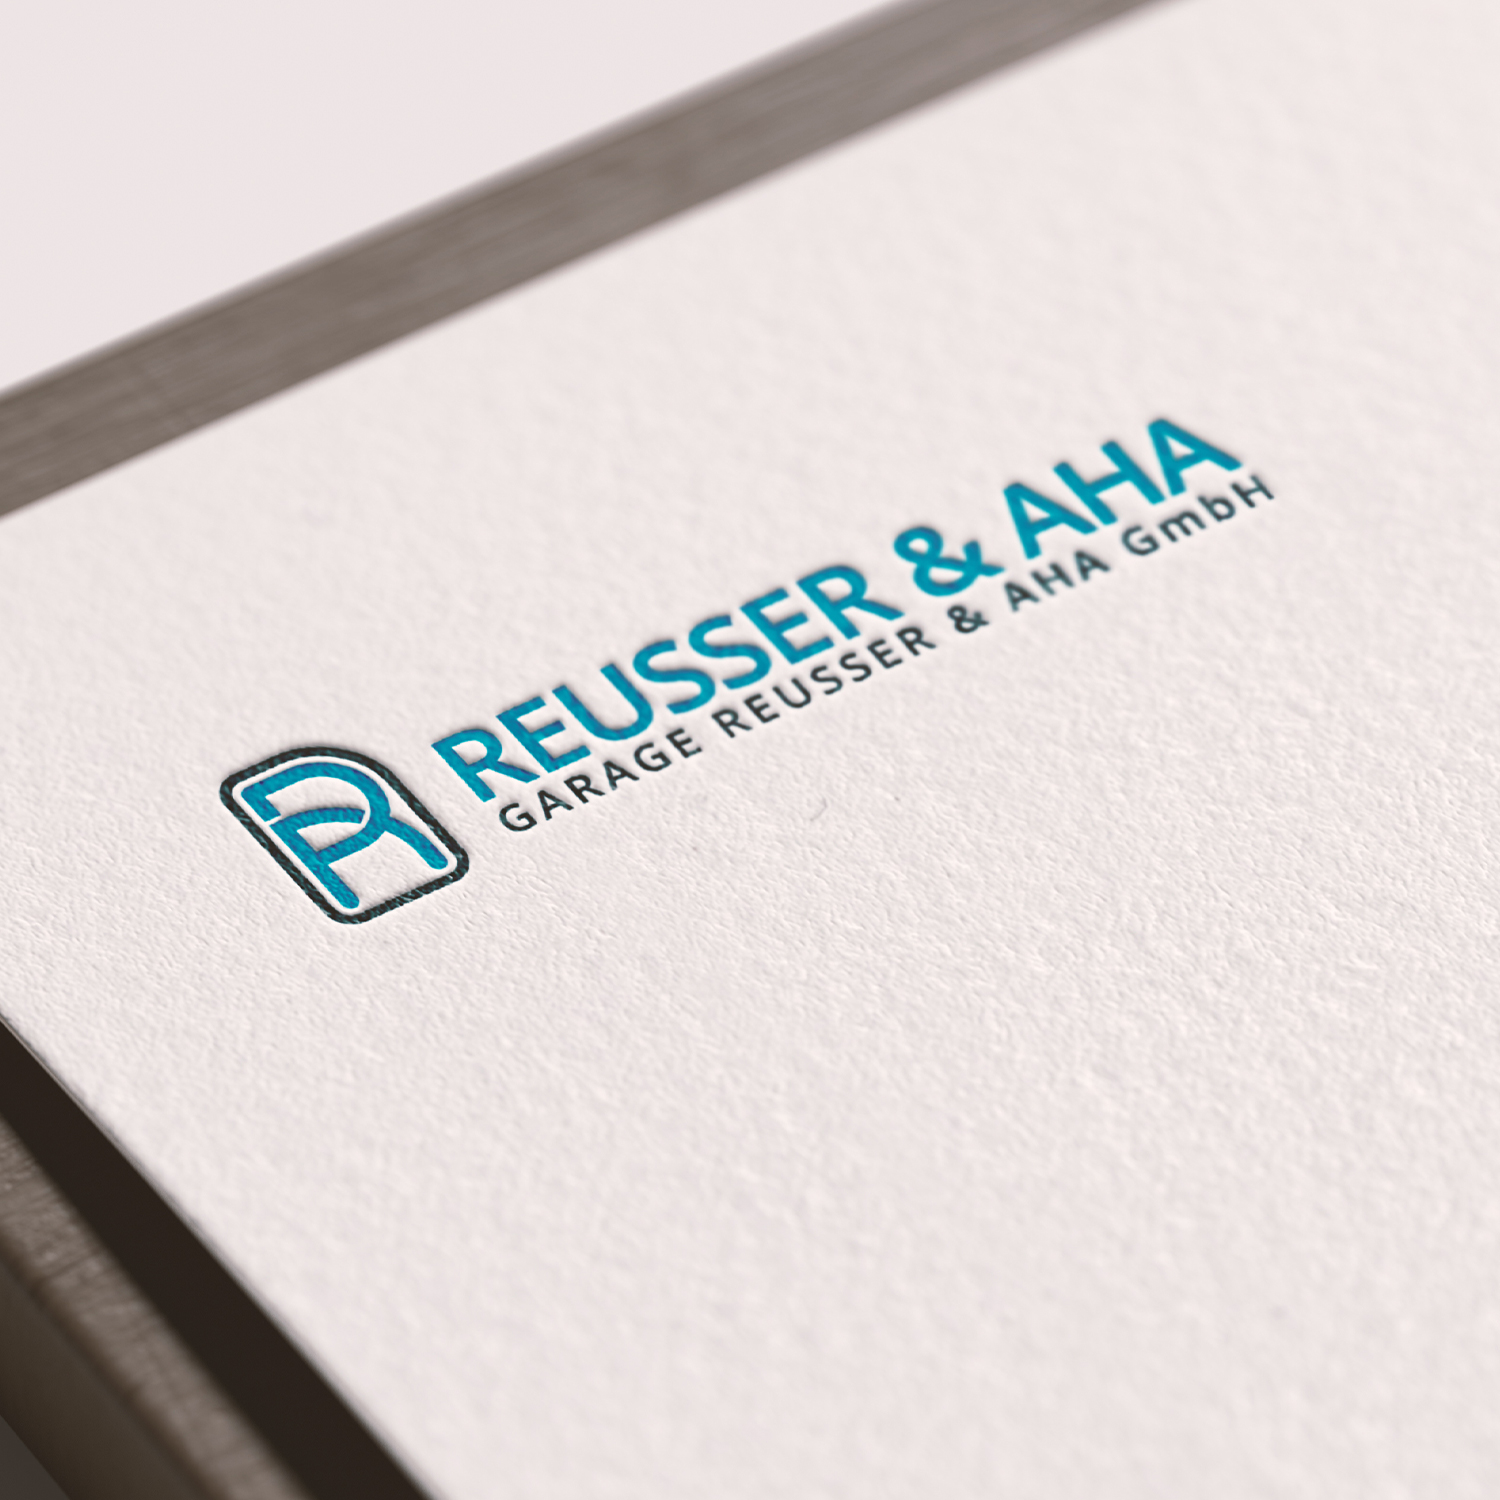 Reusser & AHA Garage Logodesign